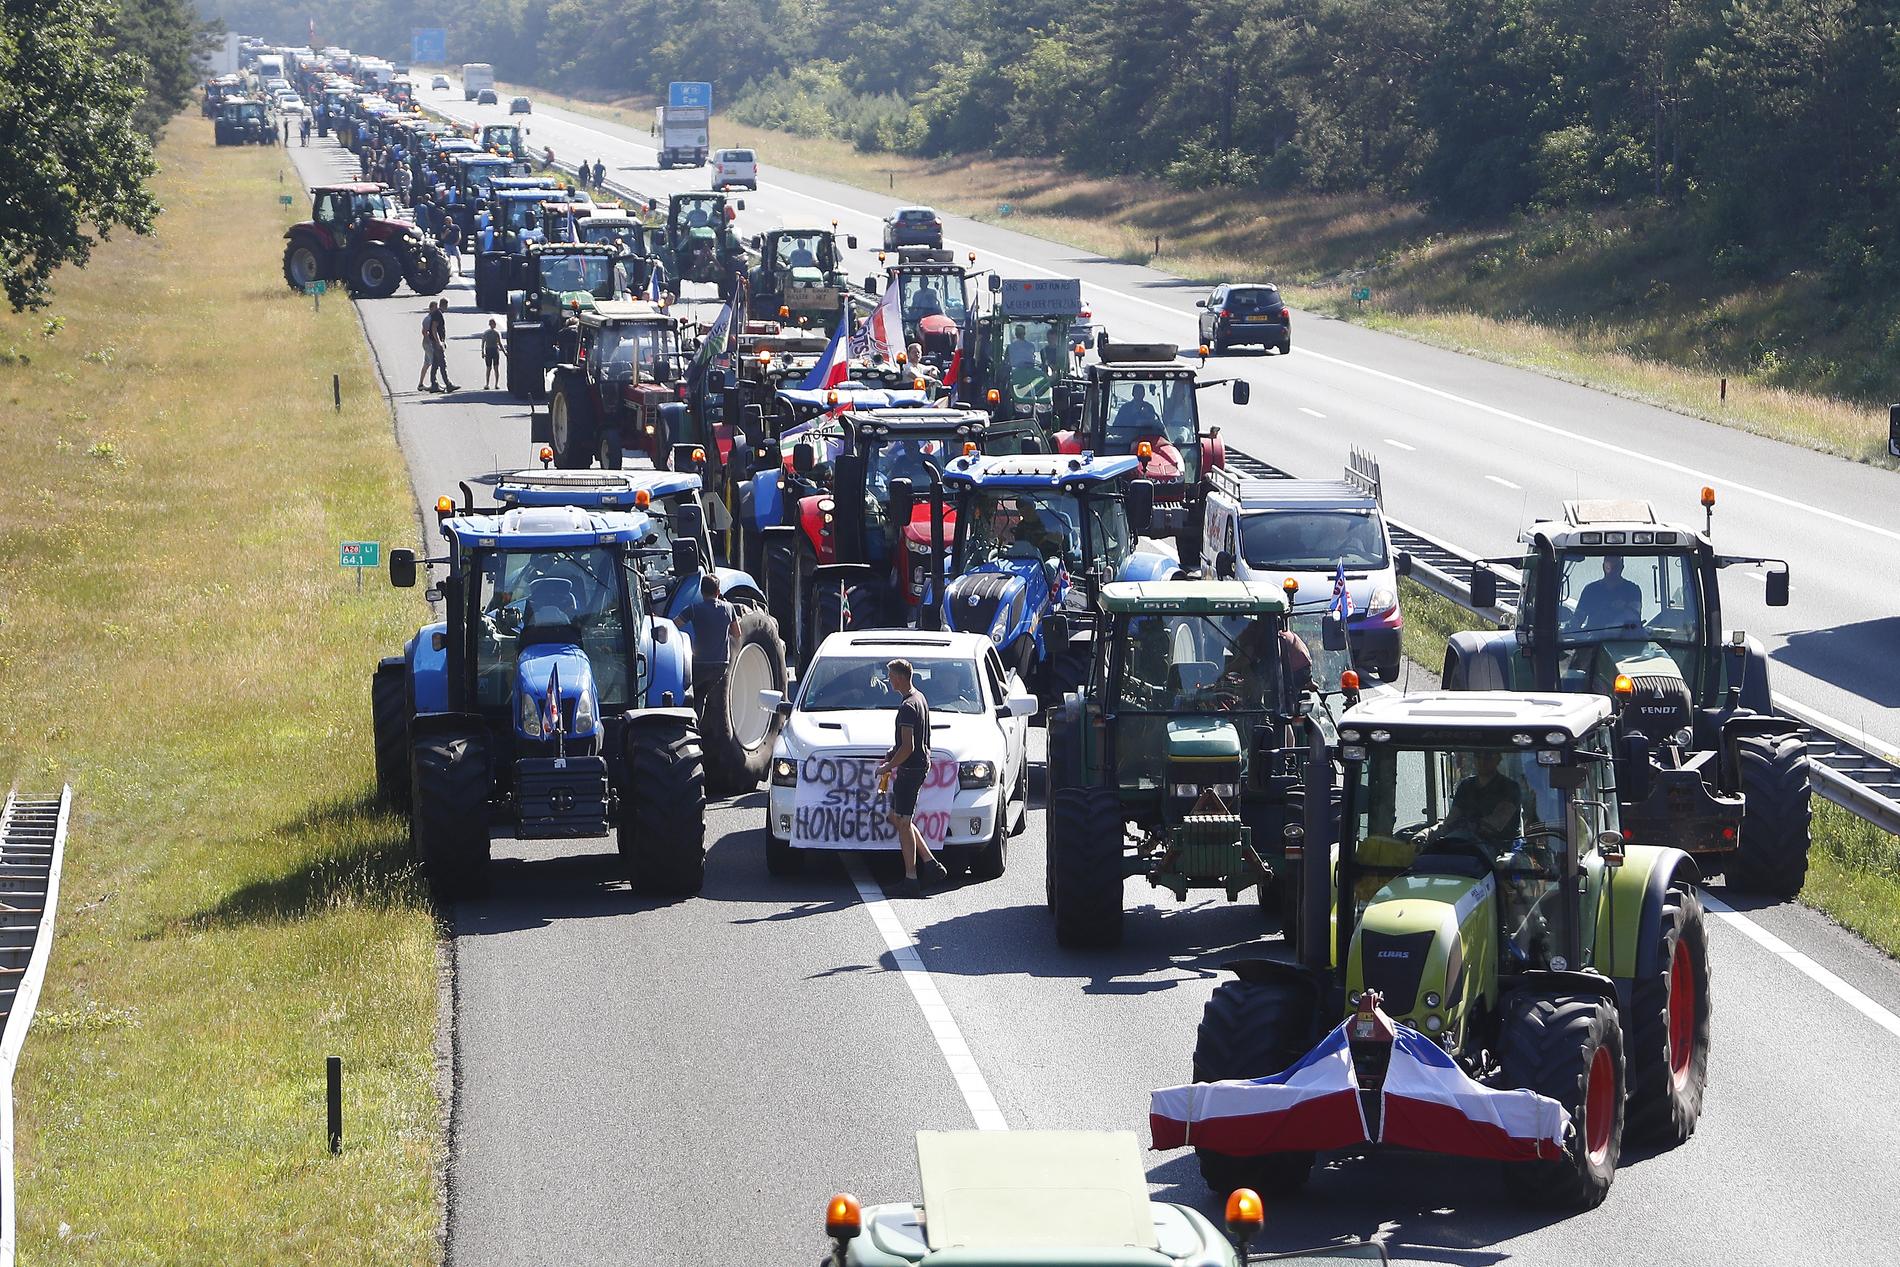 Sparato contro la protesta contadina in Olanda – VG